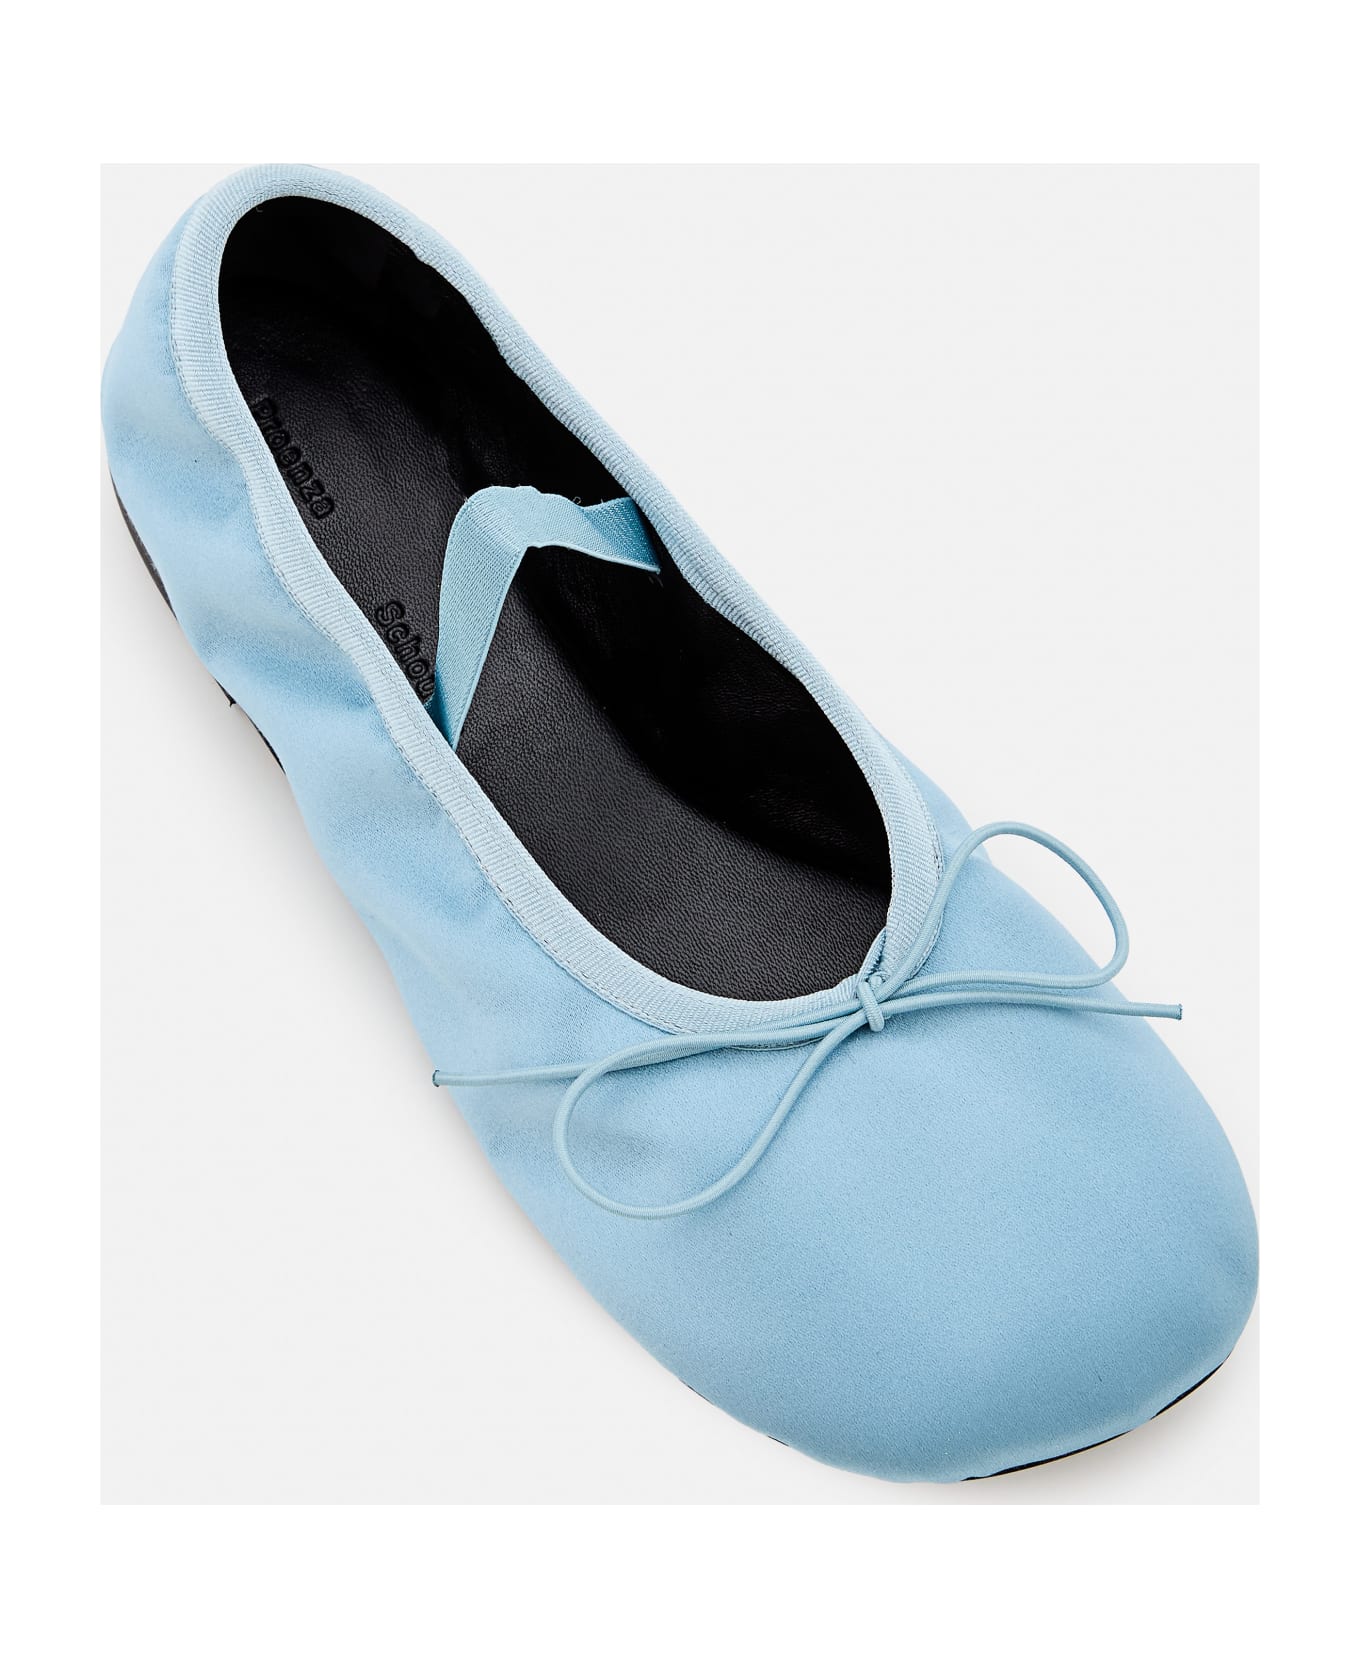 Proenza Schouler Glove Ballet Flats - Blue フラットシューズ